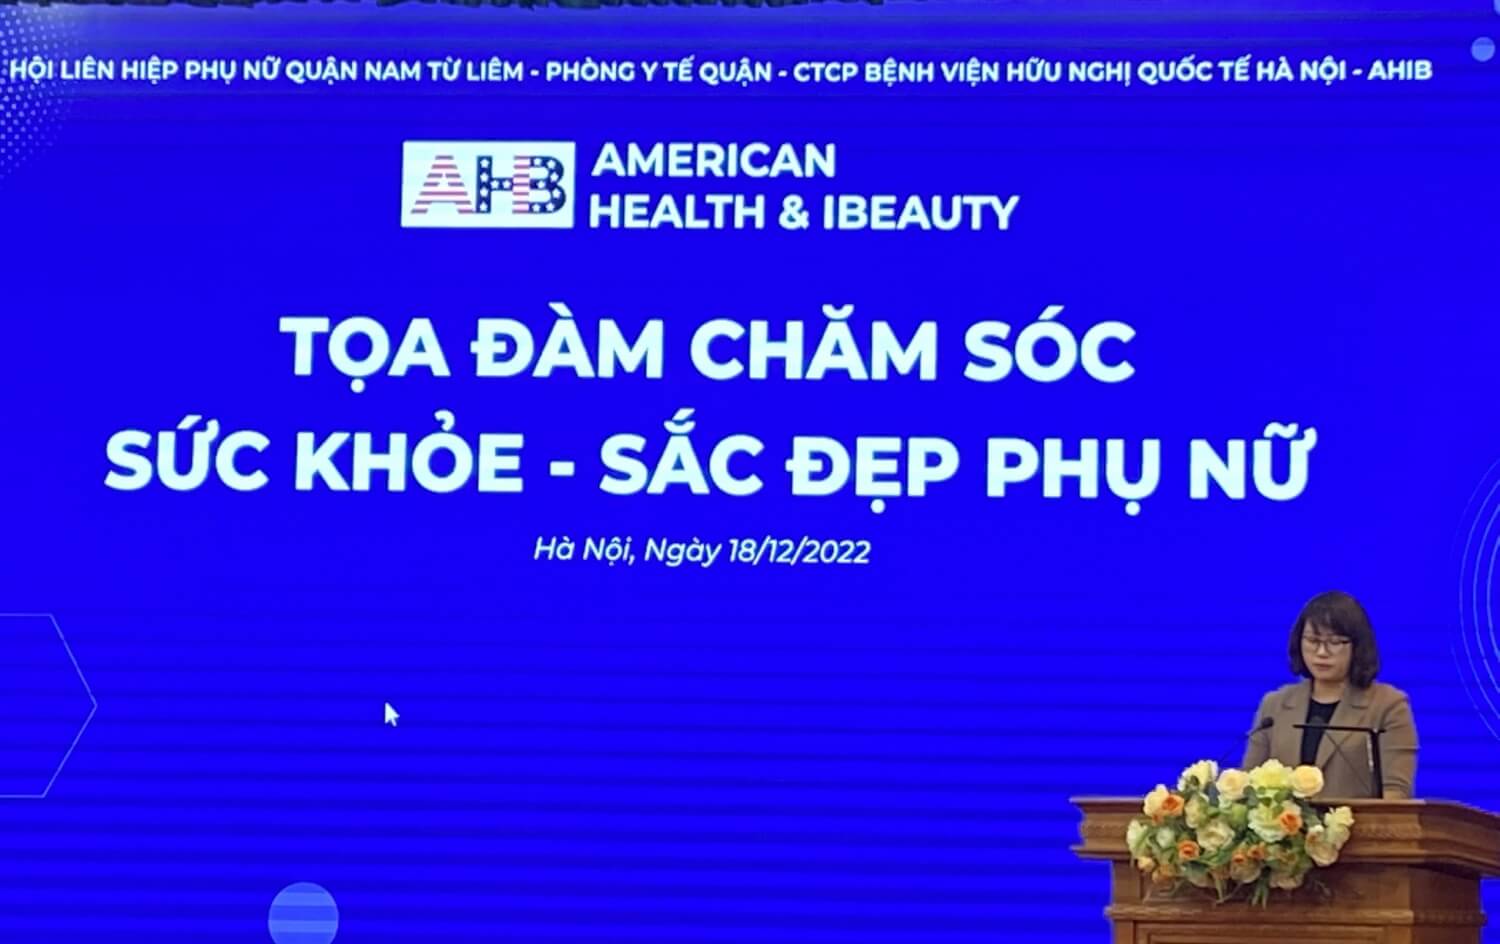 Hà Nội: AHIB phối hợp với quận Nam Từ Liêm tổ chức tọa đàm chăm sóc sức khỏe – sắc đẹp